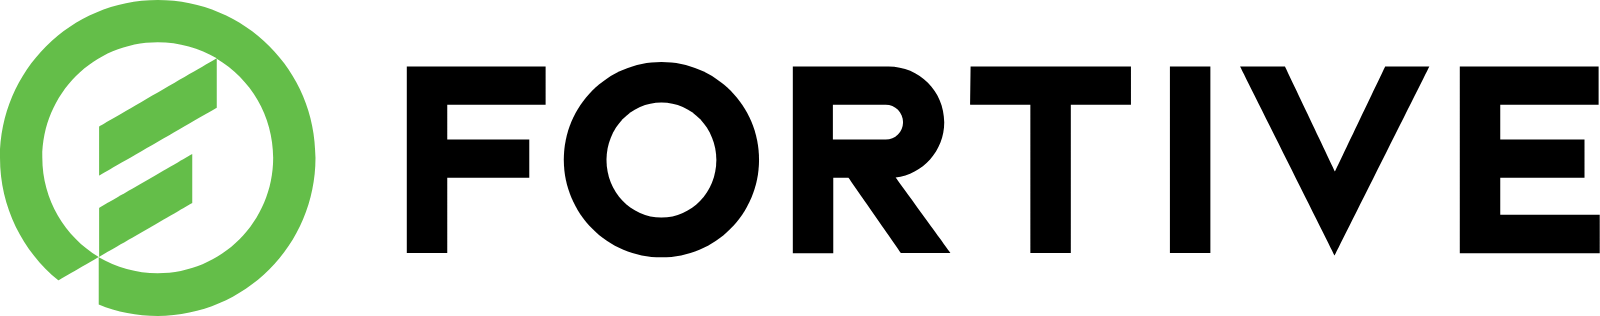 Fortive logo large (transparent PNG)